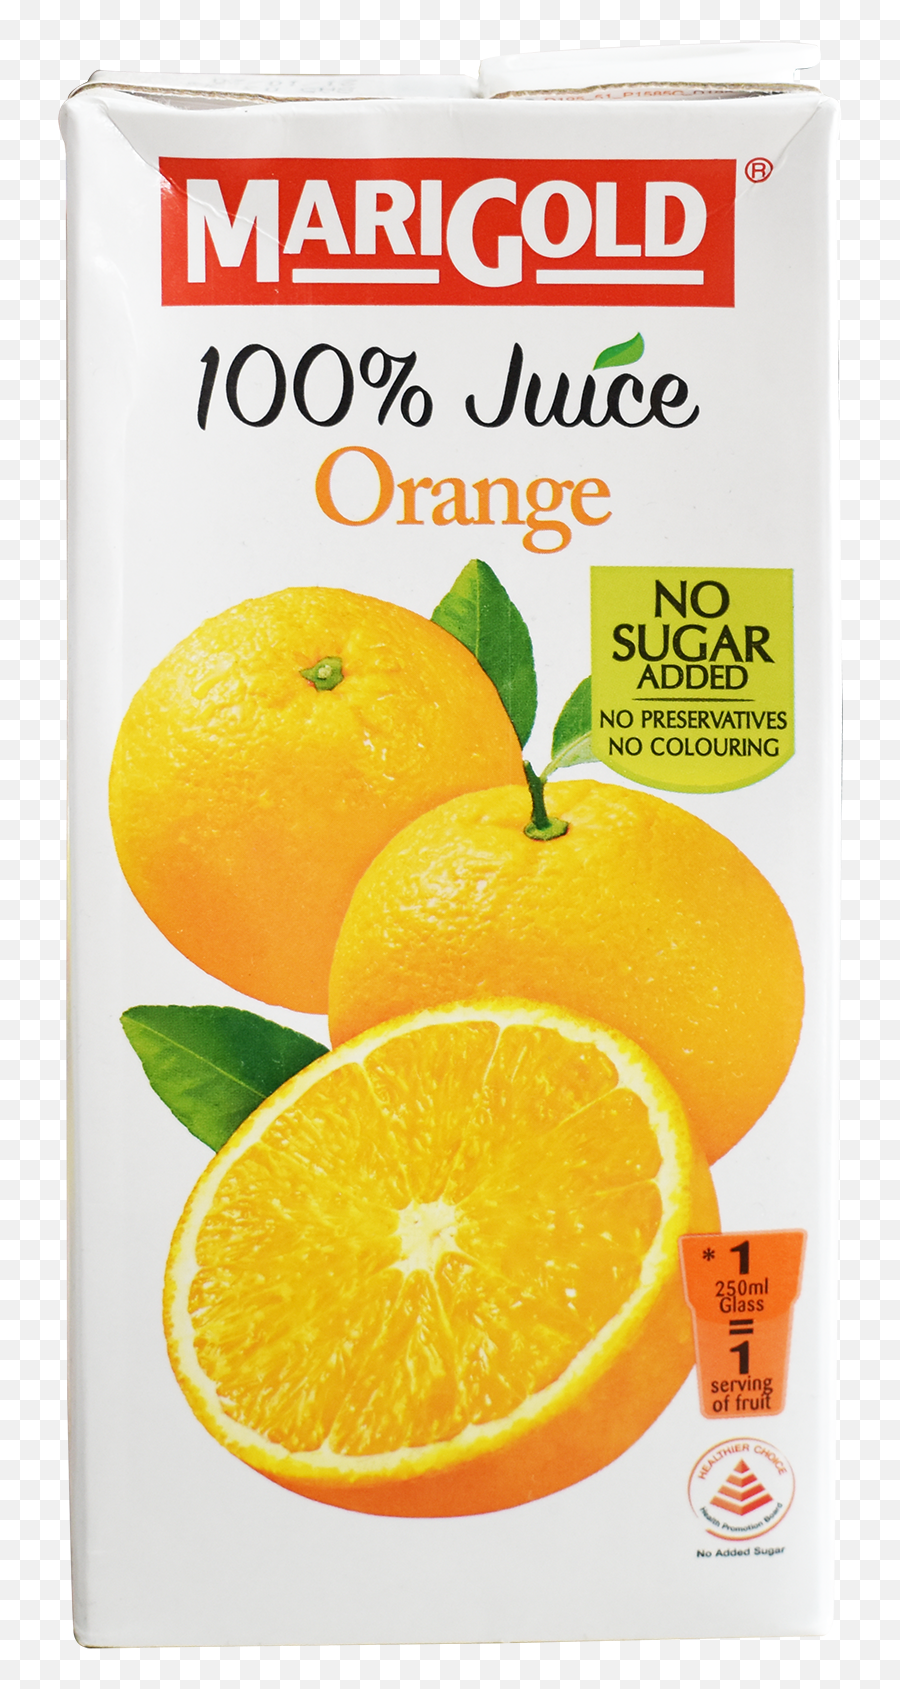 Marigold Orange 100 1ltr U2013 Cjs Supermarket - Marigold Png,Marigold Transparent